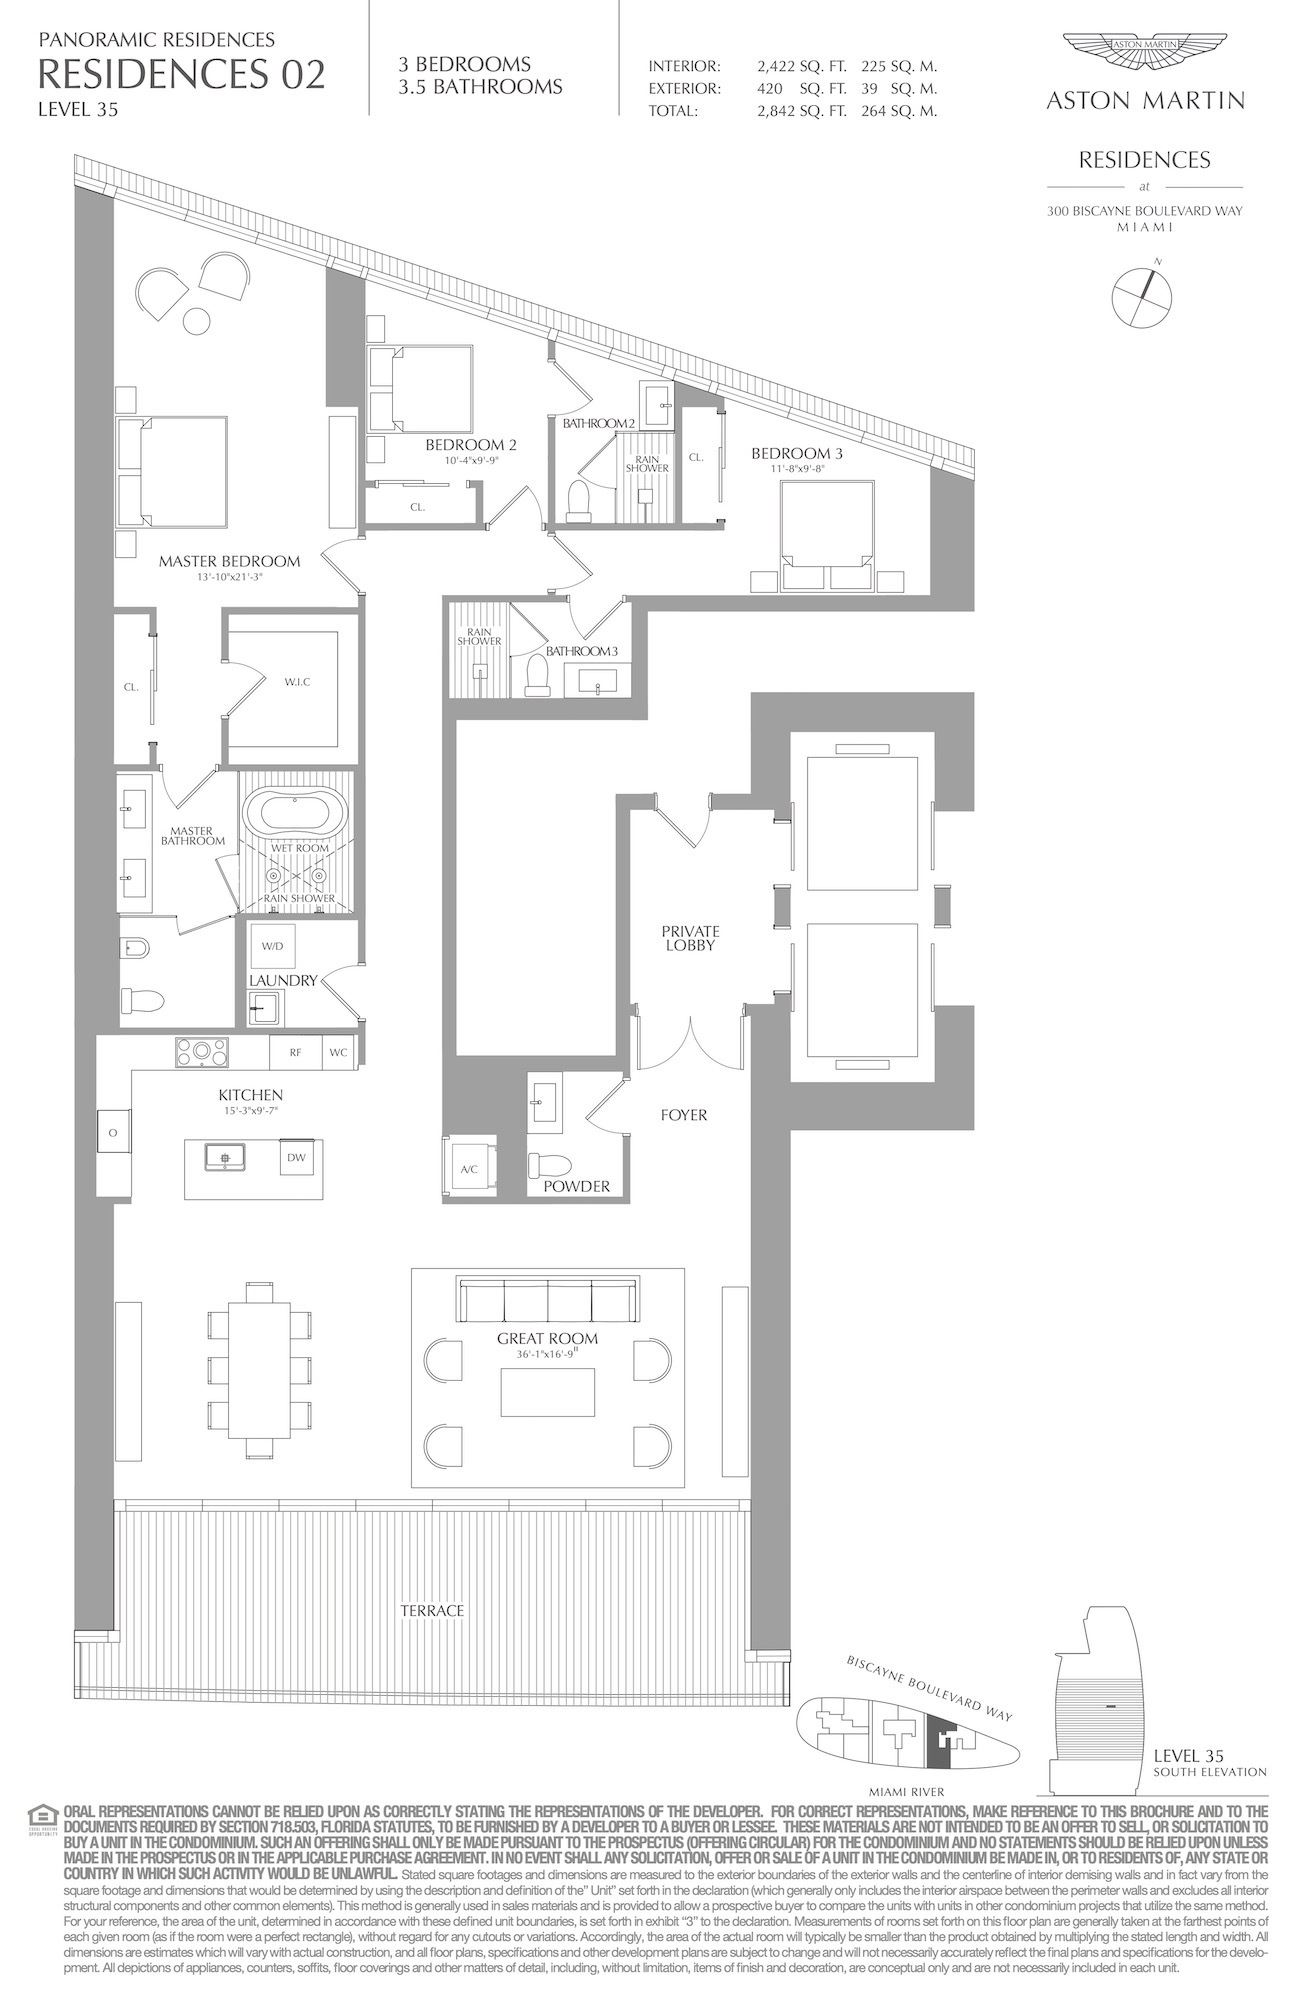 Floor Plan for Aston Martin Residences Floorplans, Residence 02